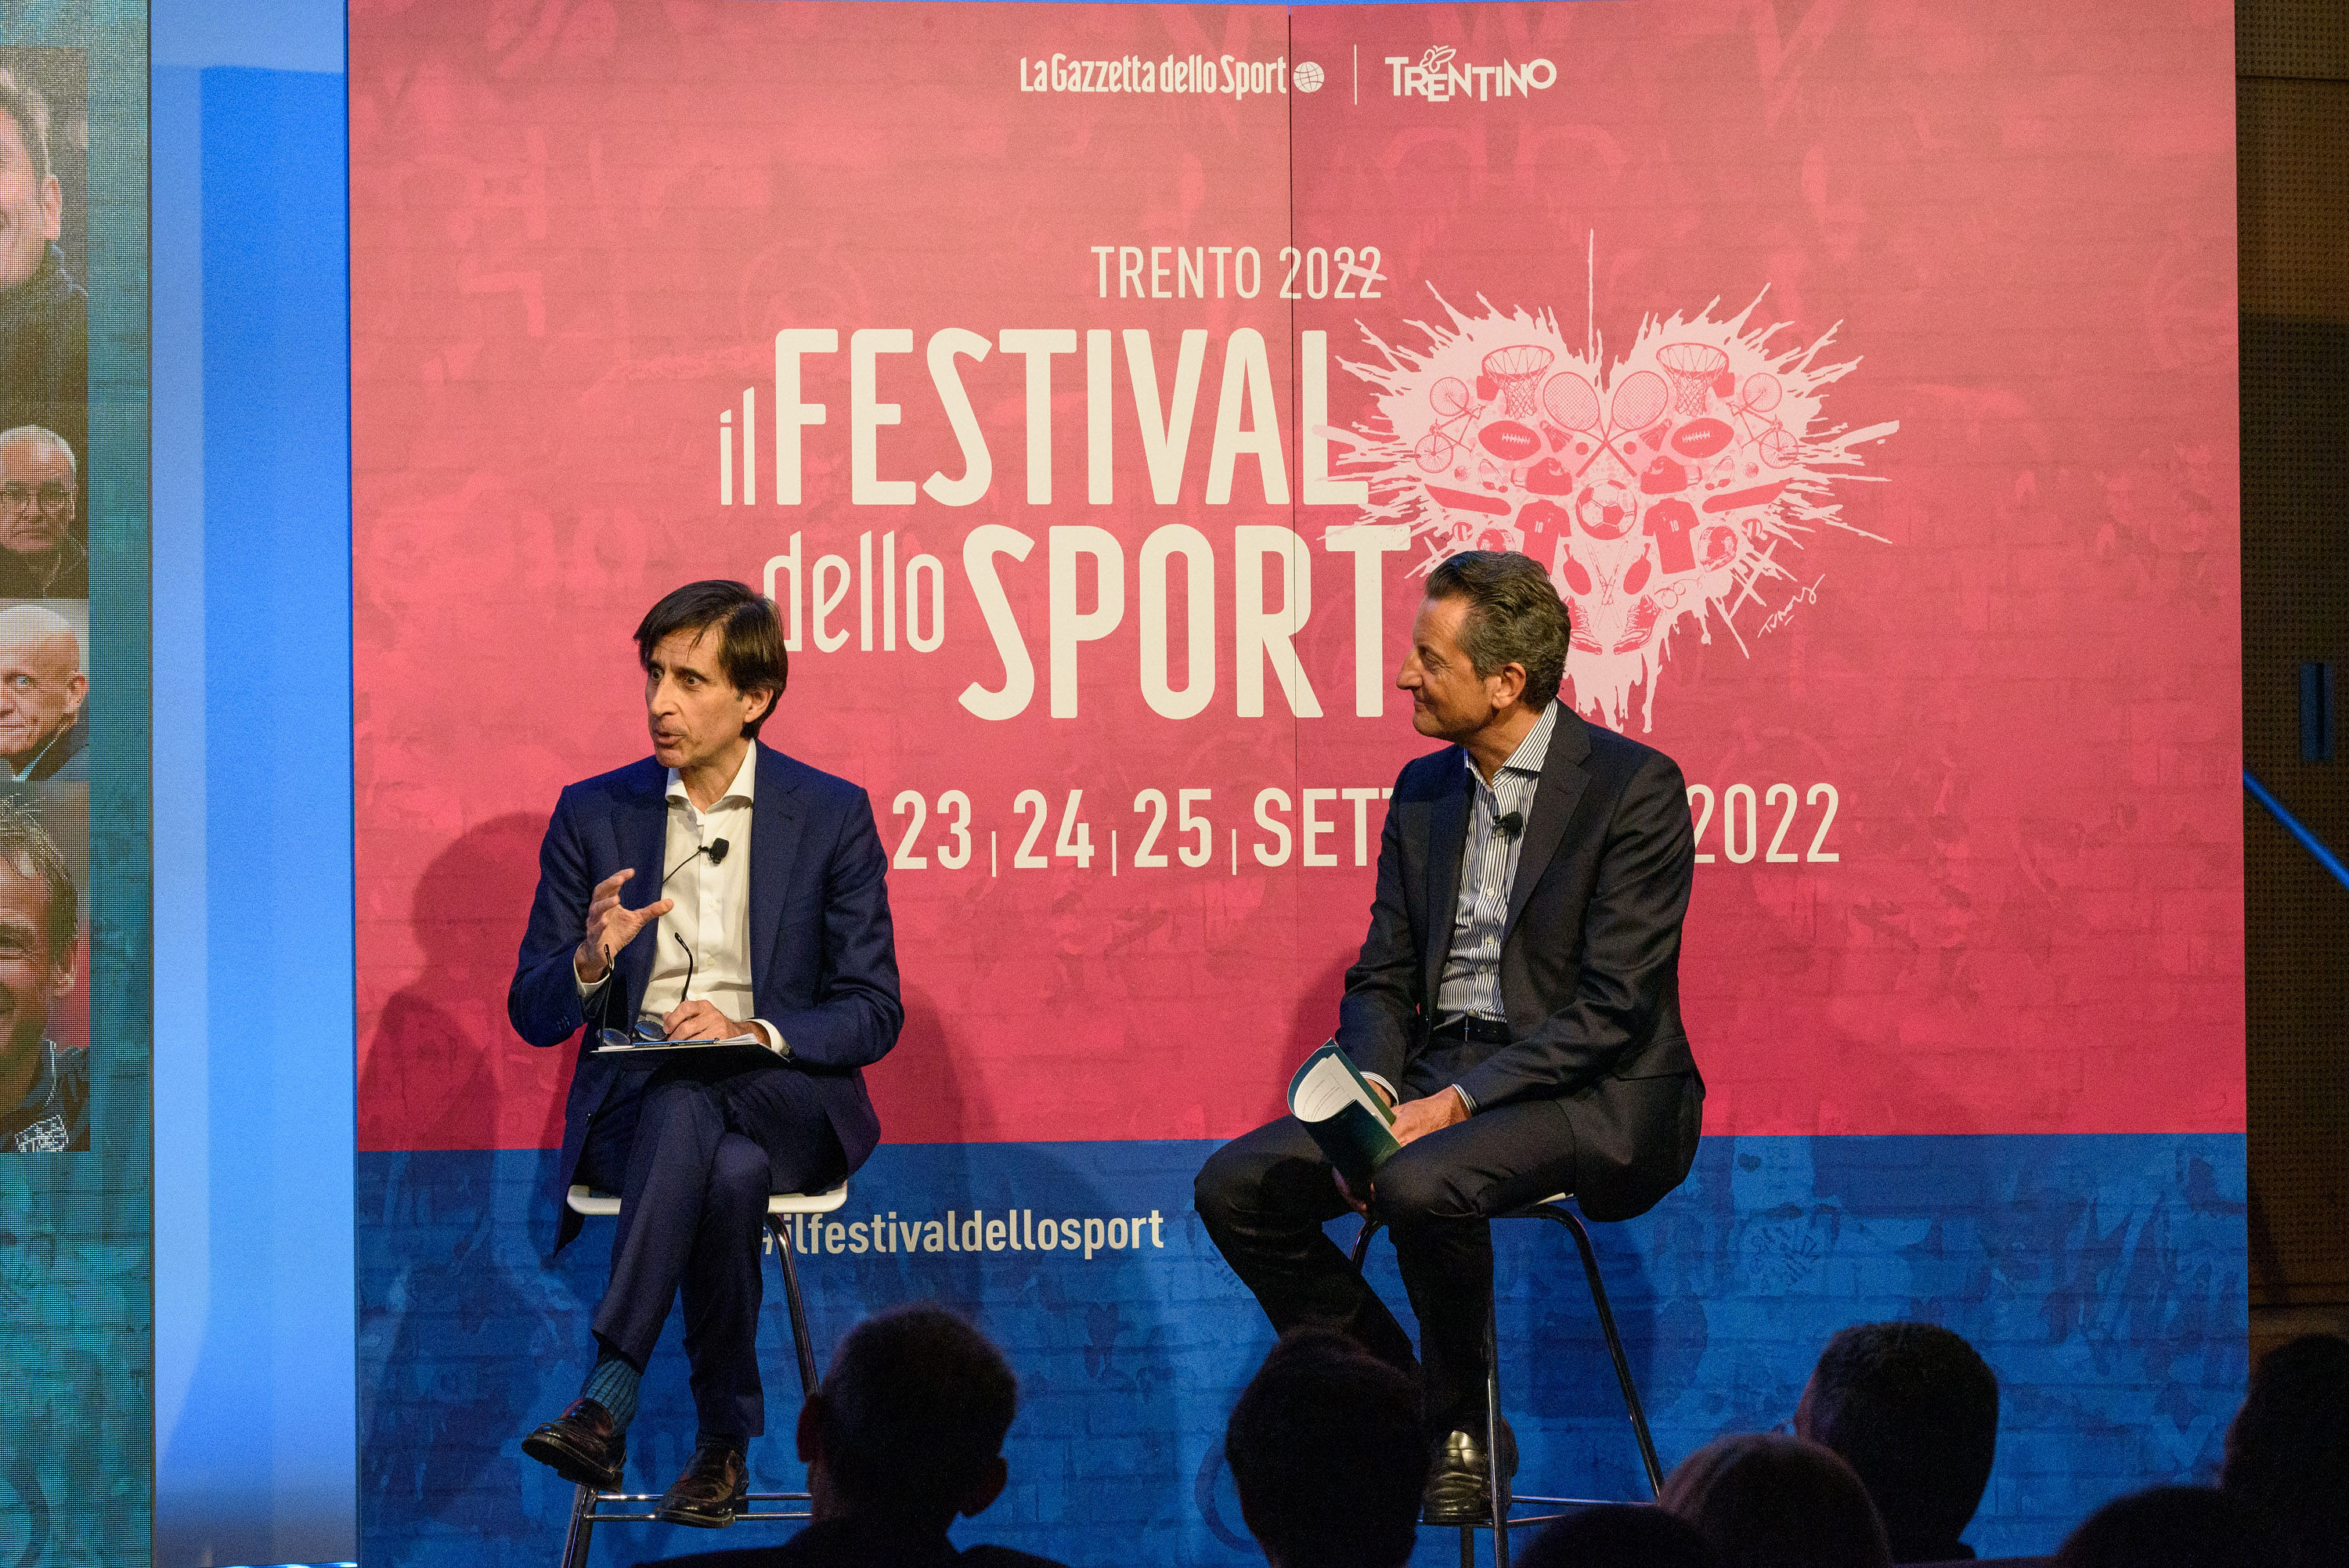 A Milano la presentazione del programma del Festival dello Sport 2022 (Gianni Valenti Vicedirettore vicario “La Gazzetta dello Sport”, Maurizio Rossini Amministratore Delegato di Trentino Marketing)